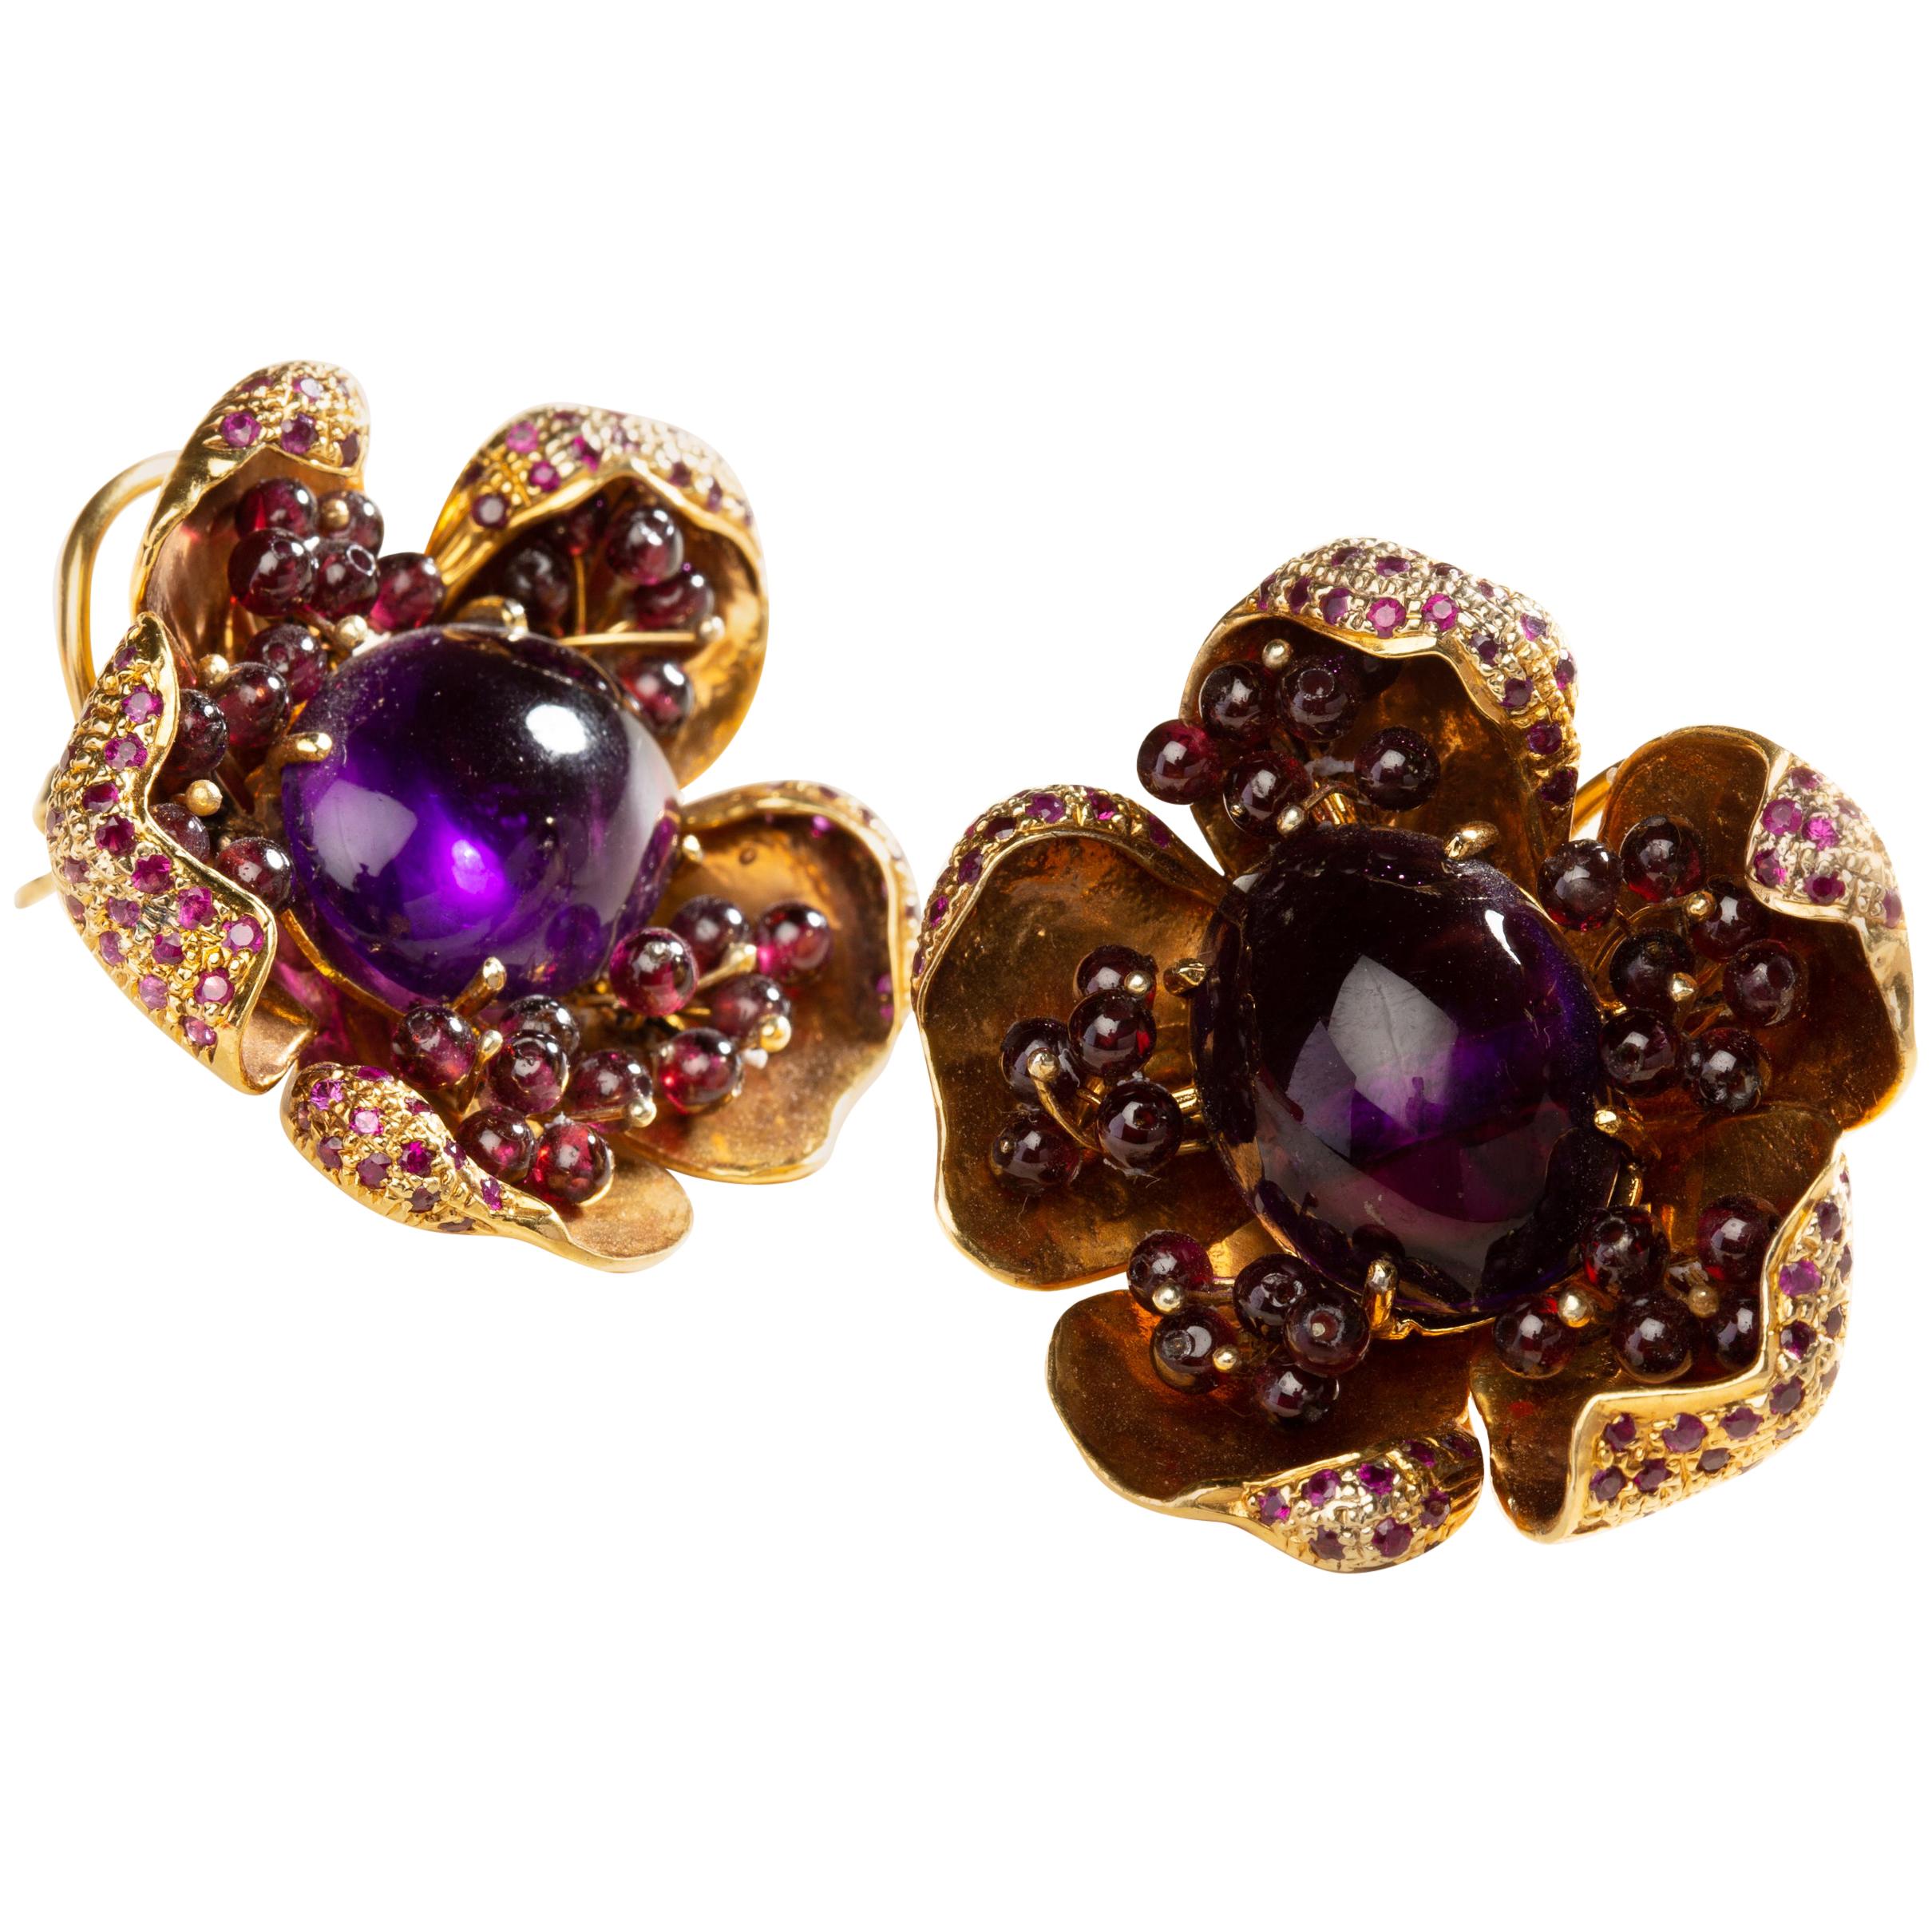 Amethyst Flower Earrings in Silver with 24 Karat Gold Vermeil and Gemstones